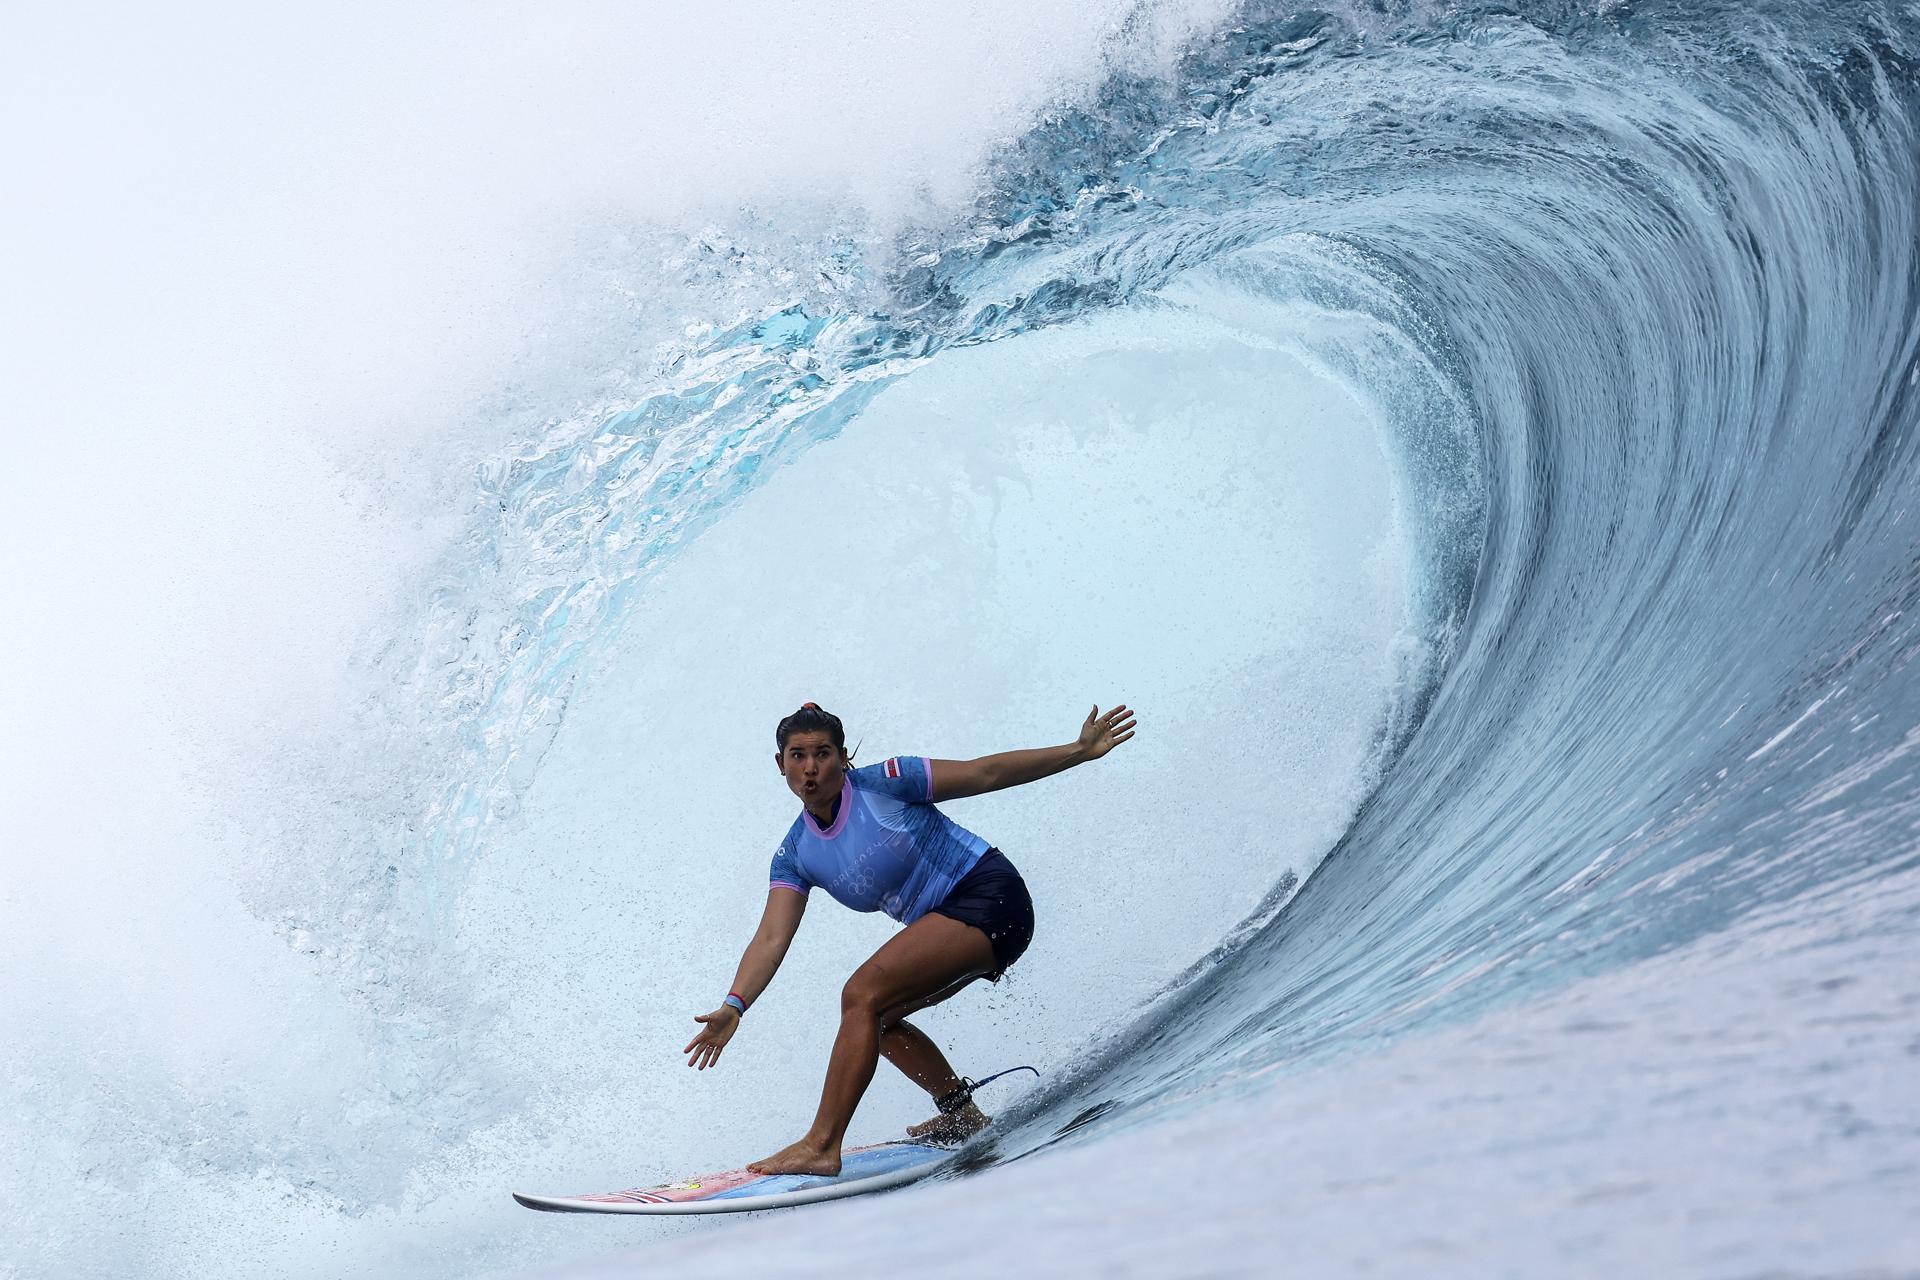 Les proves de surf han començat a l'altra punta del món, a Tahití.